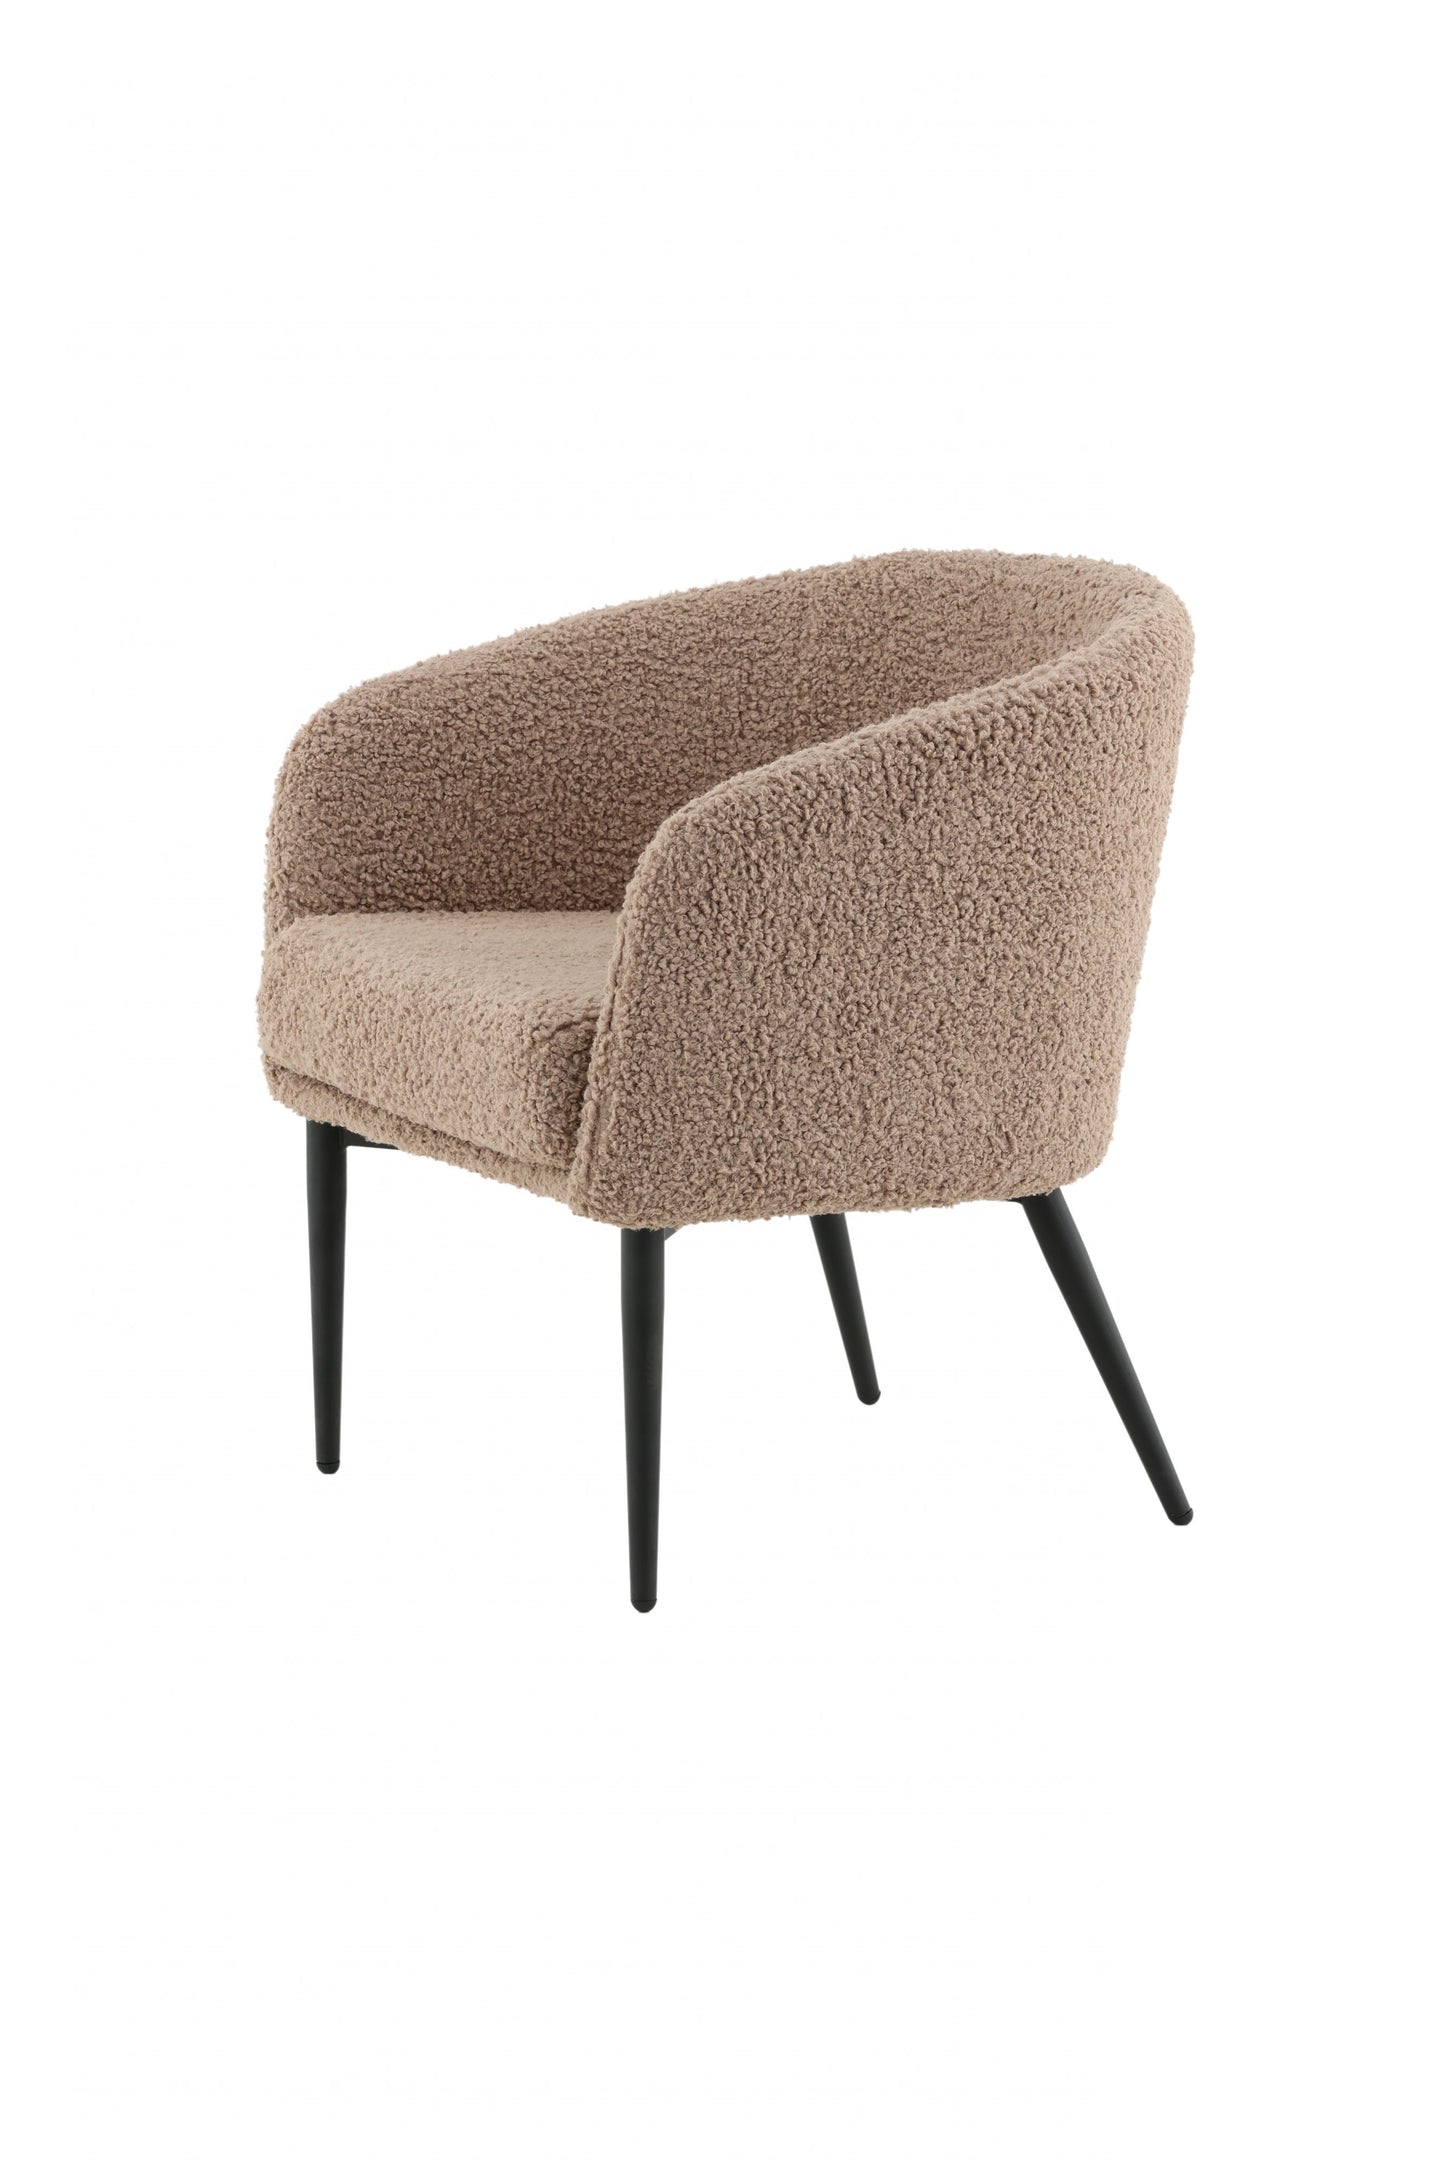 Venture Design | Fluffy Lounge Chair - Svart / Brun / Beige Teddy